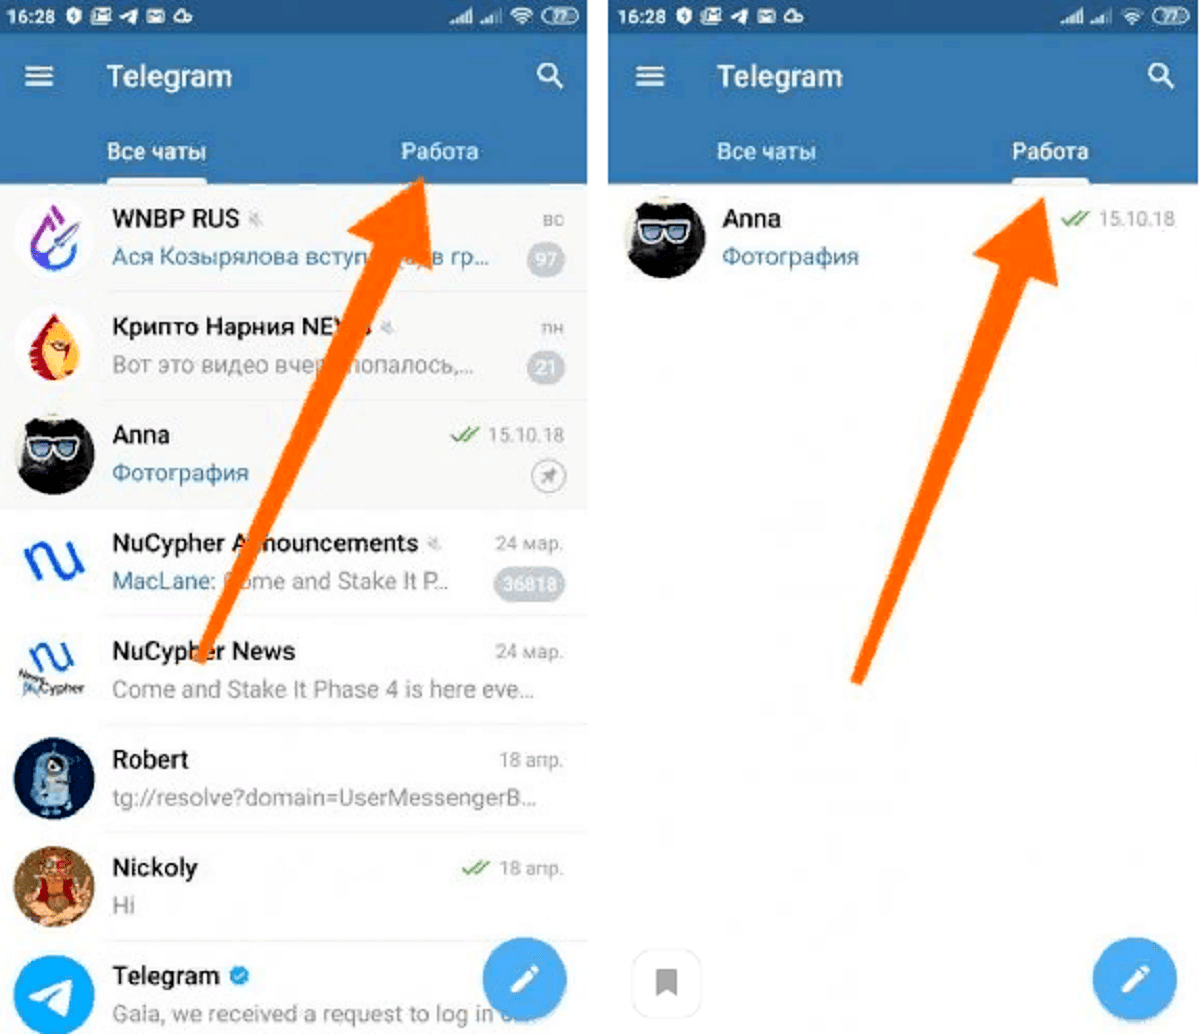 Установить телеграмм на андроид на русском языке бесплатно пошагово видео как фото 41